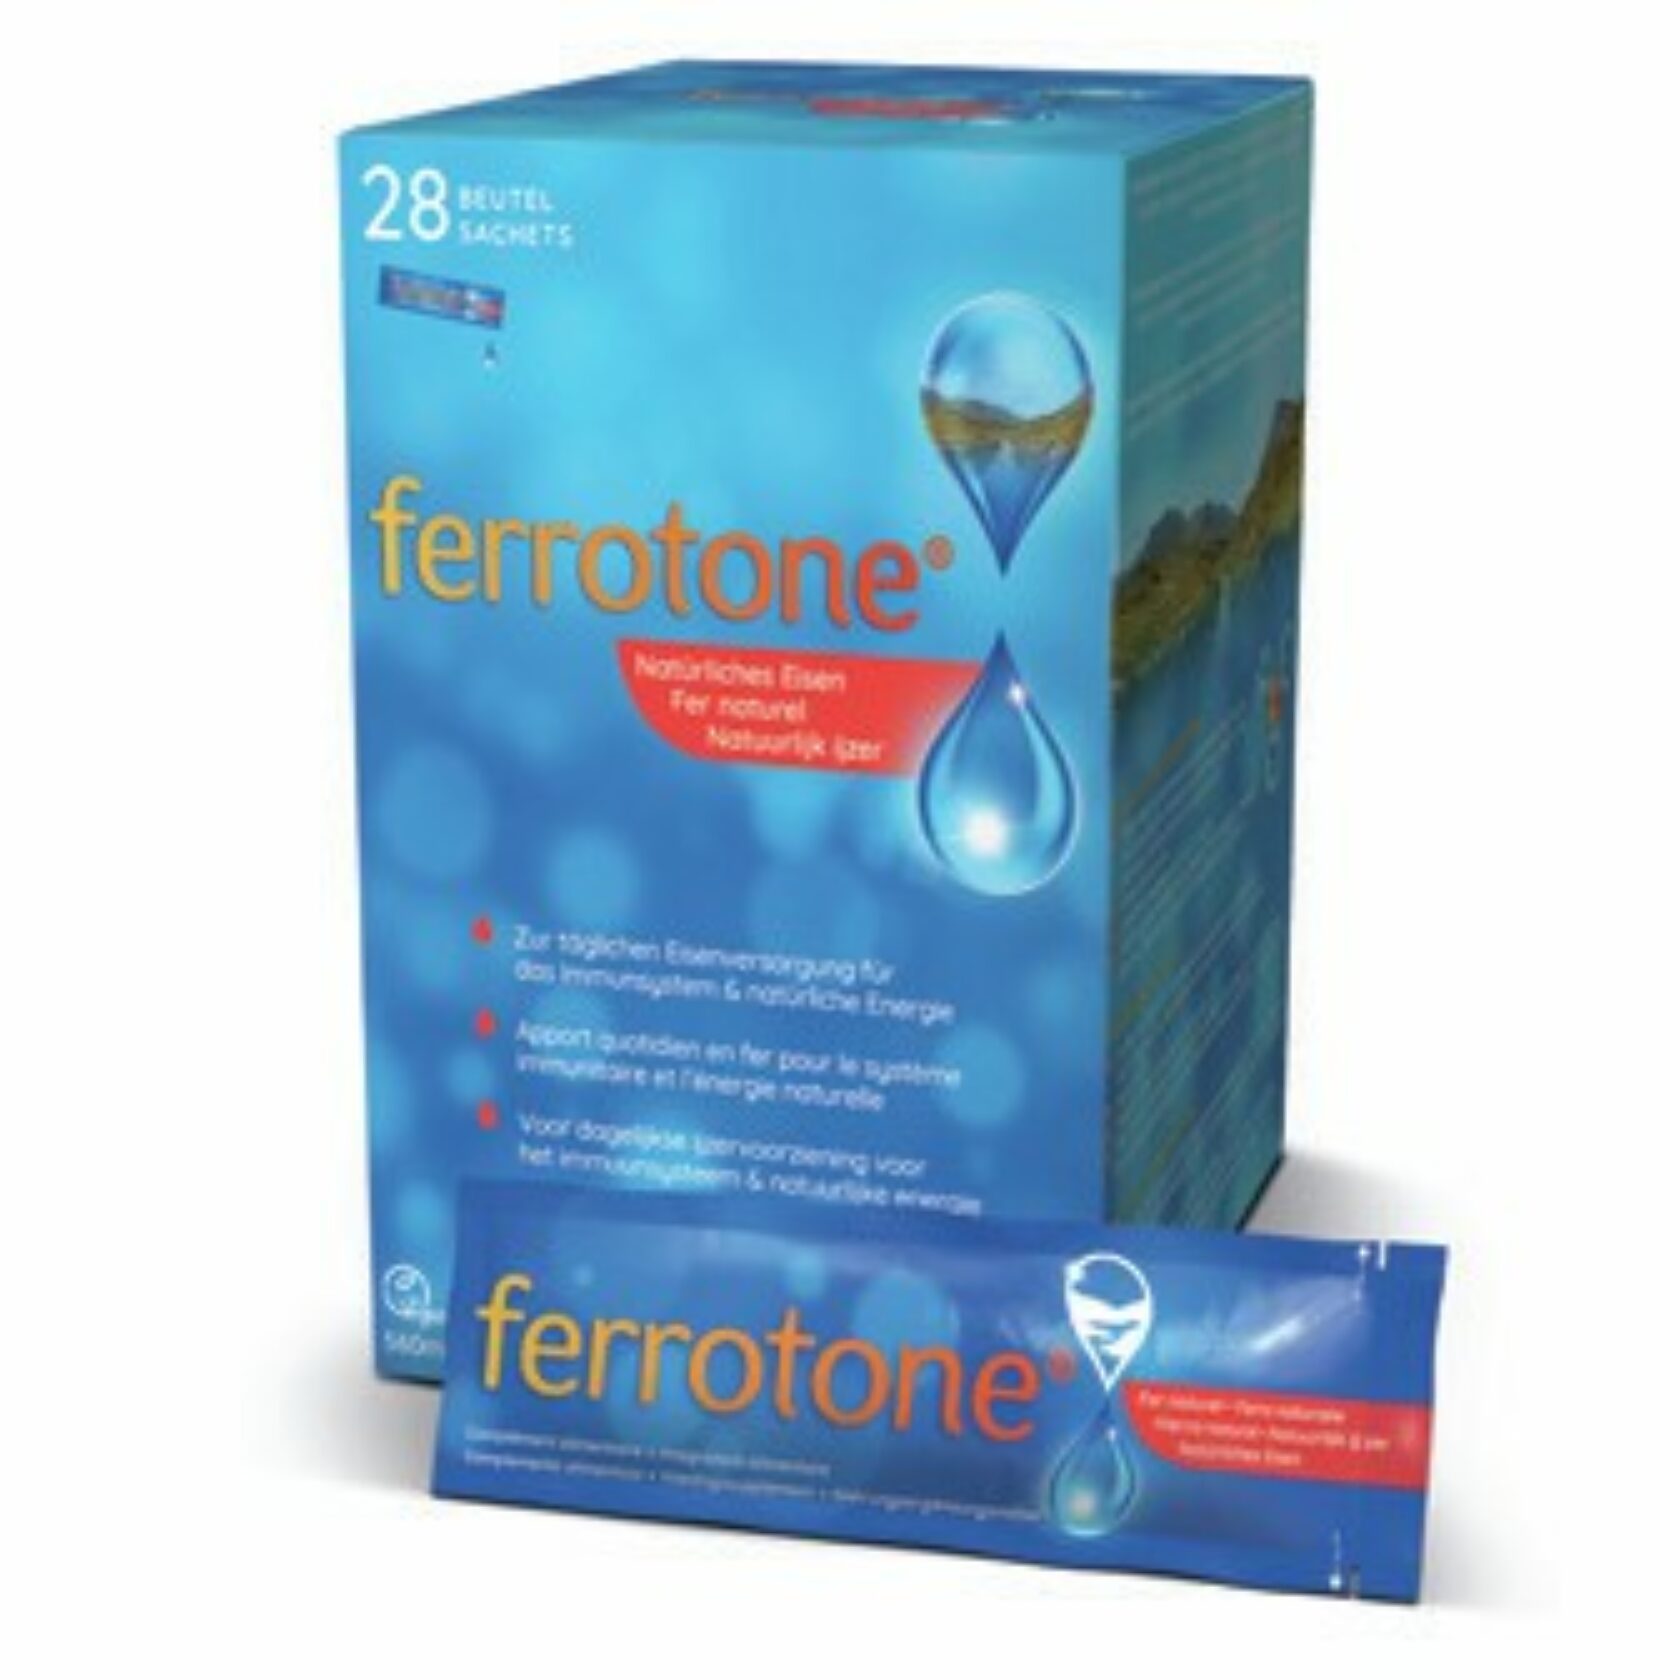 Produktpackung von Ferrotone von Nelsons GmbH